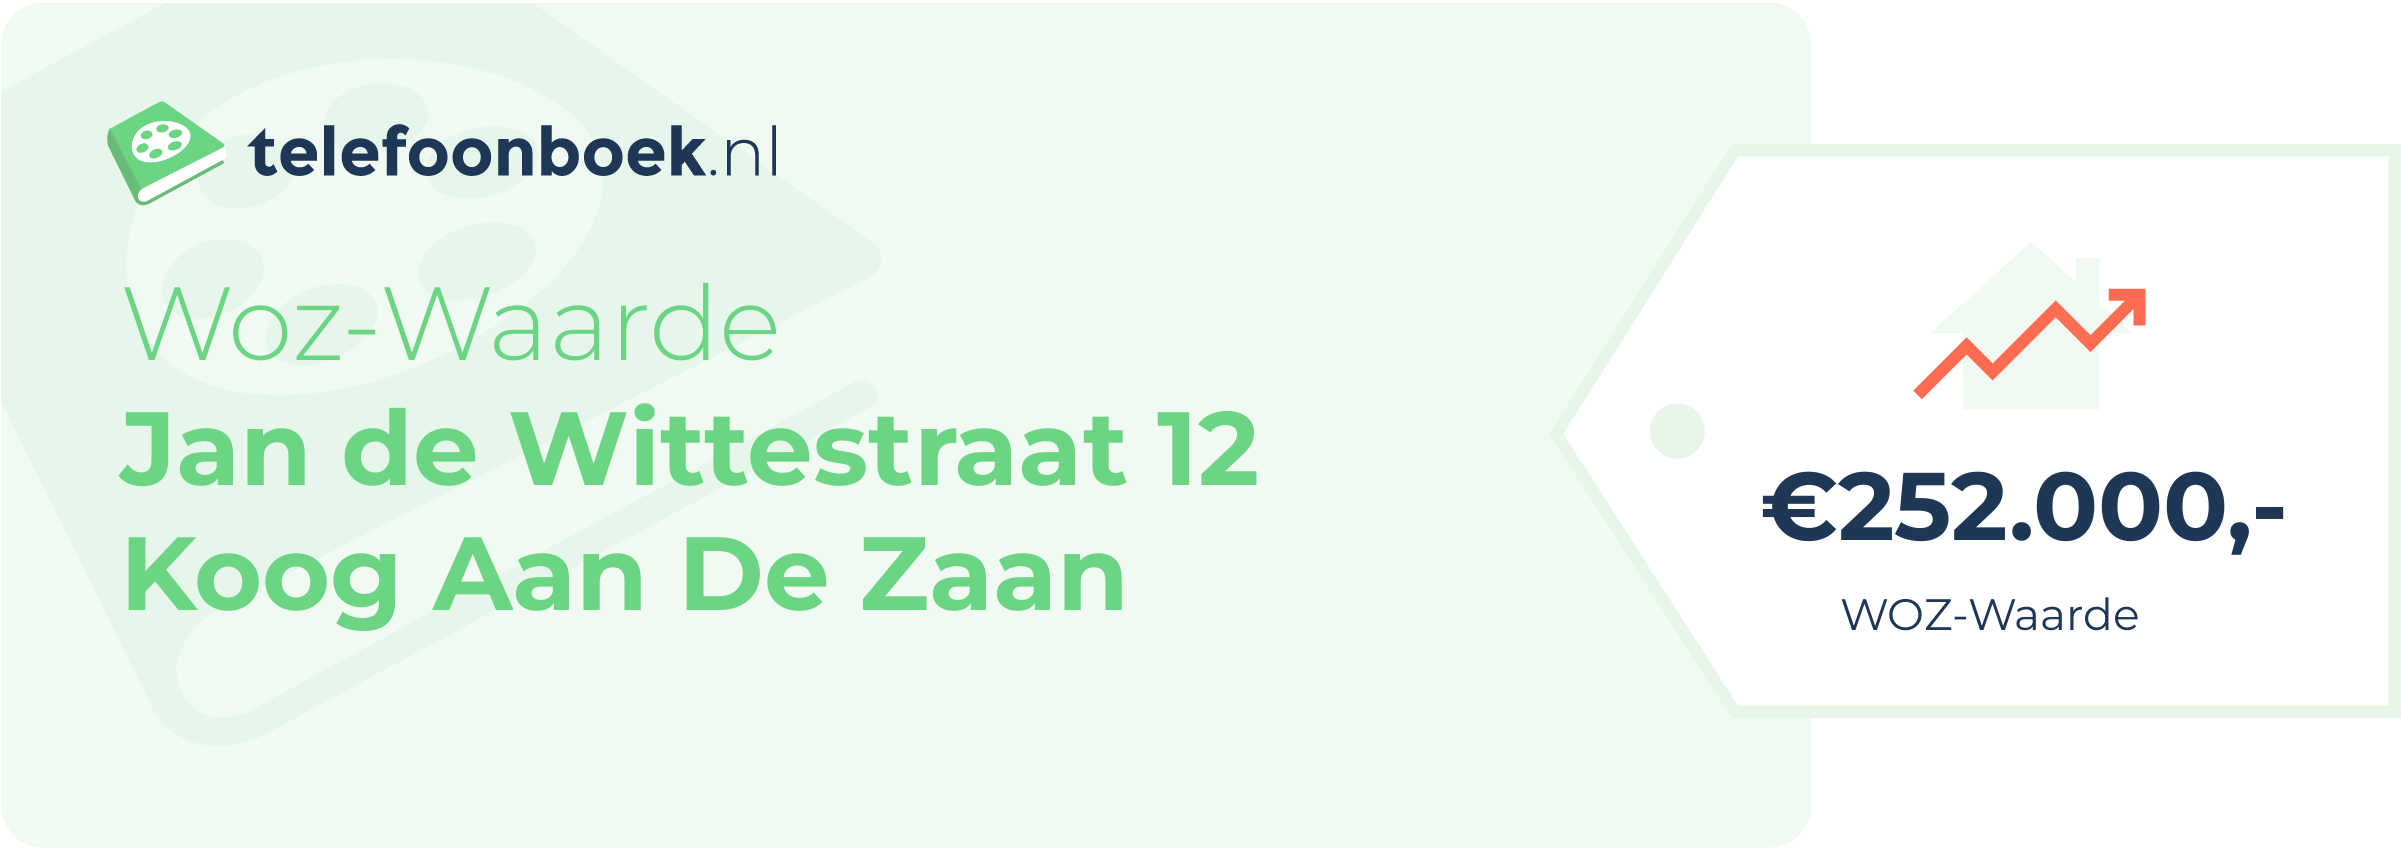 WOZ-waarde Jan De Wittestraat 12 Koog Aan De Zaan